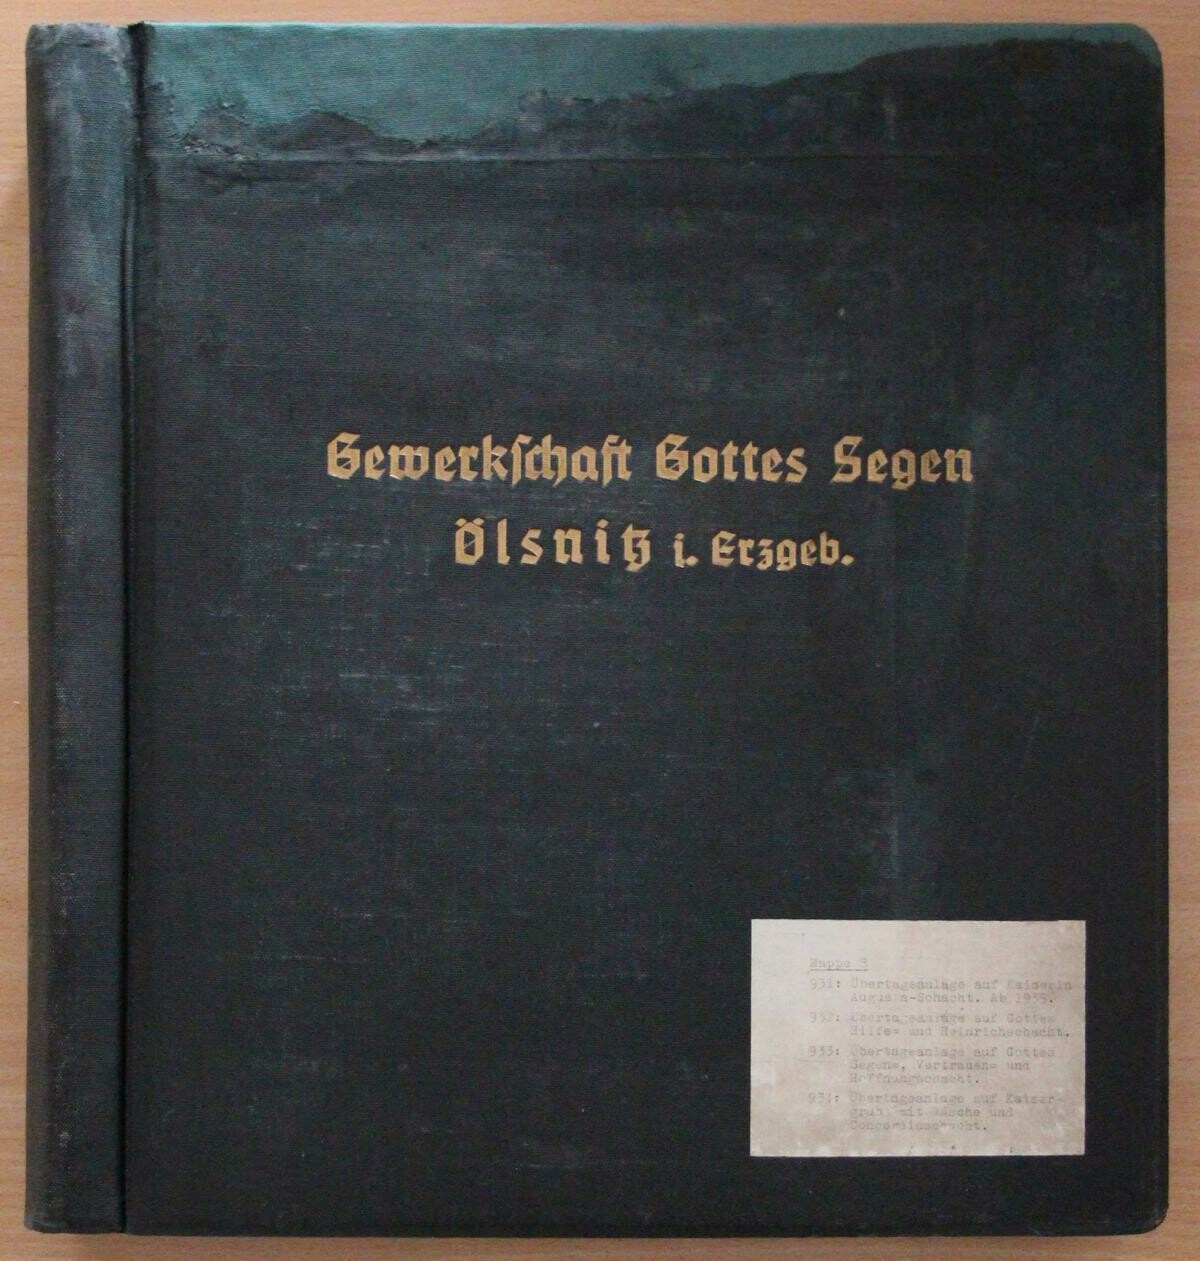 Fotoalbum (Mappe 8) der Gewerkschaft Gottes Segen in Oelsnitz (Erzgeb.) (Bergbaumuseum Oelsnitz/Erzgebirge CC BY-NC-ND)